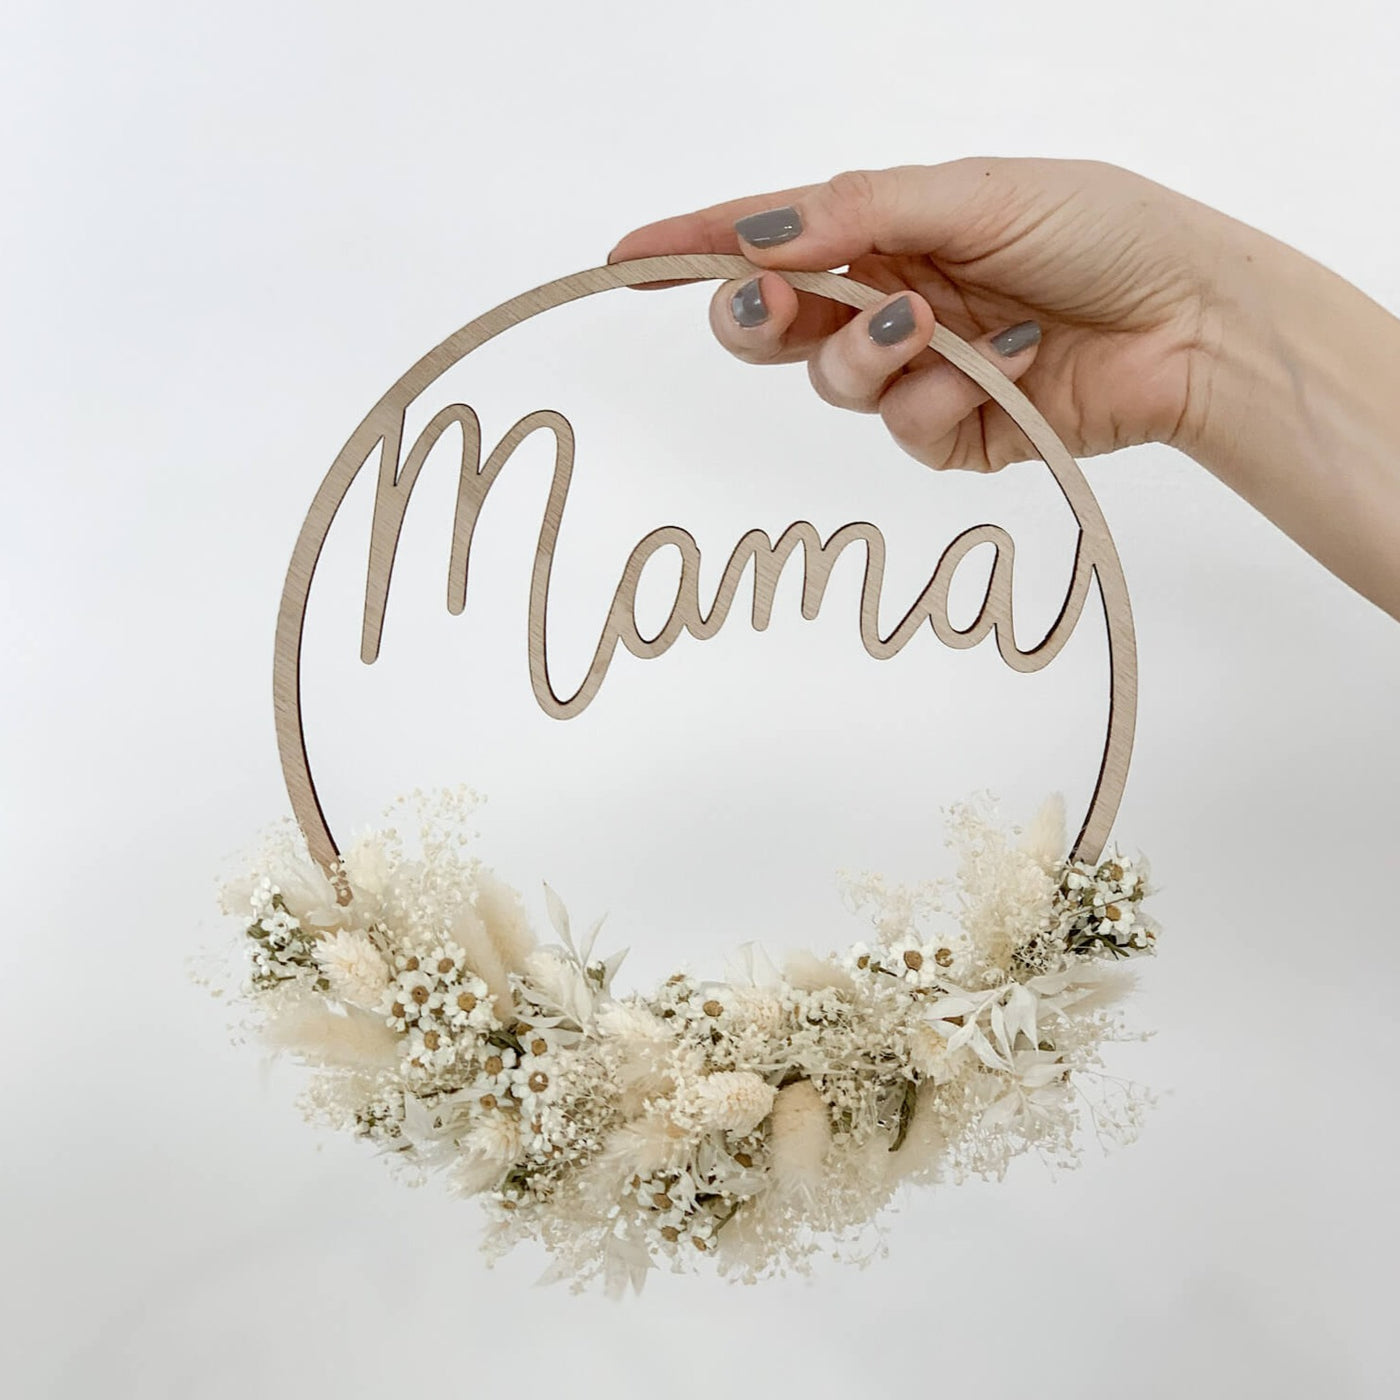 Muttertagsgeschenk Holzkranz Mama von Eulenschnitt mit Trockenblumen - DIY